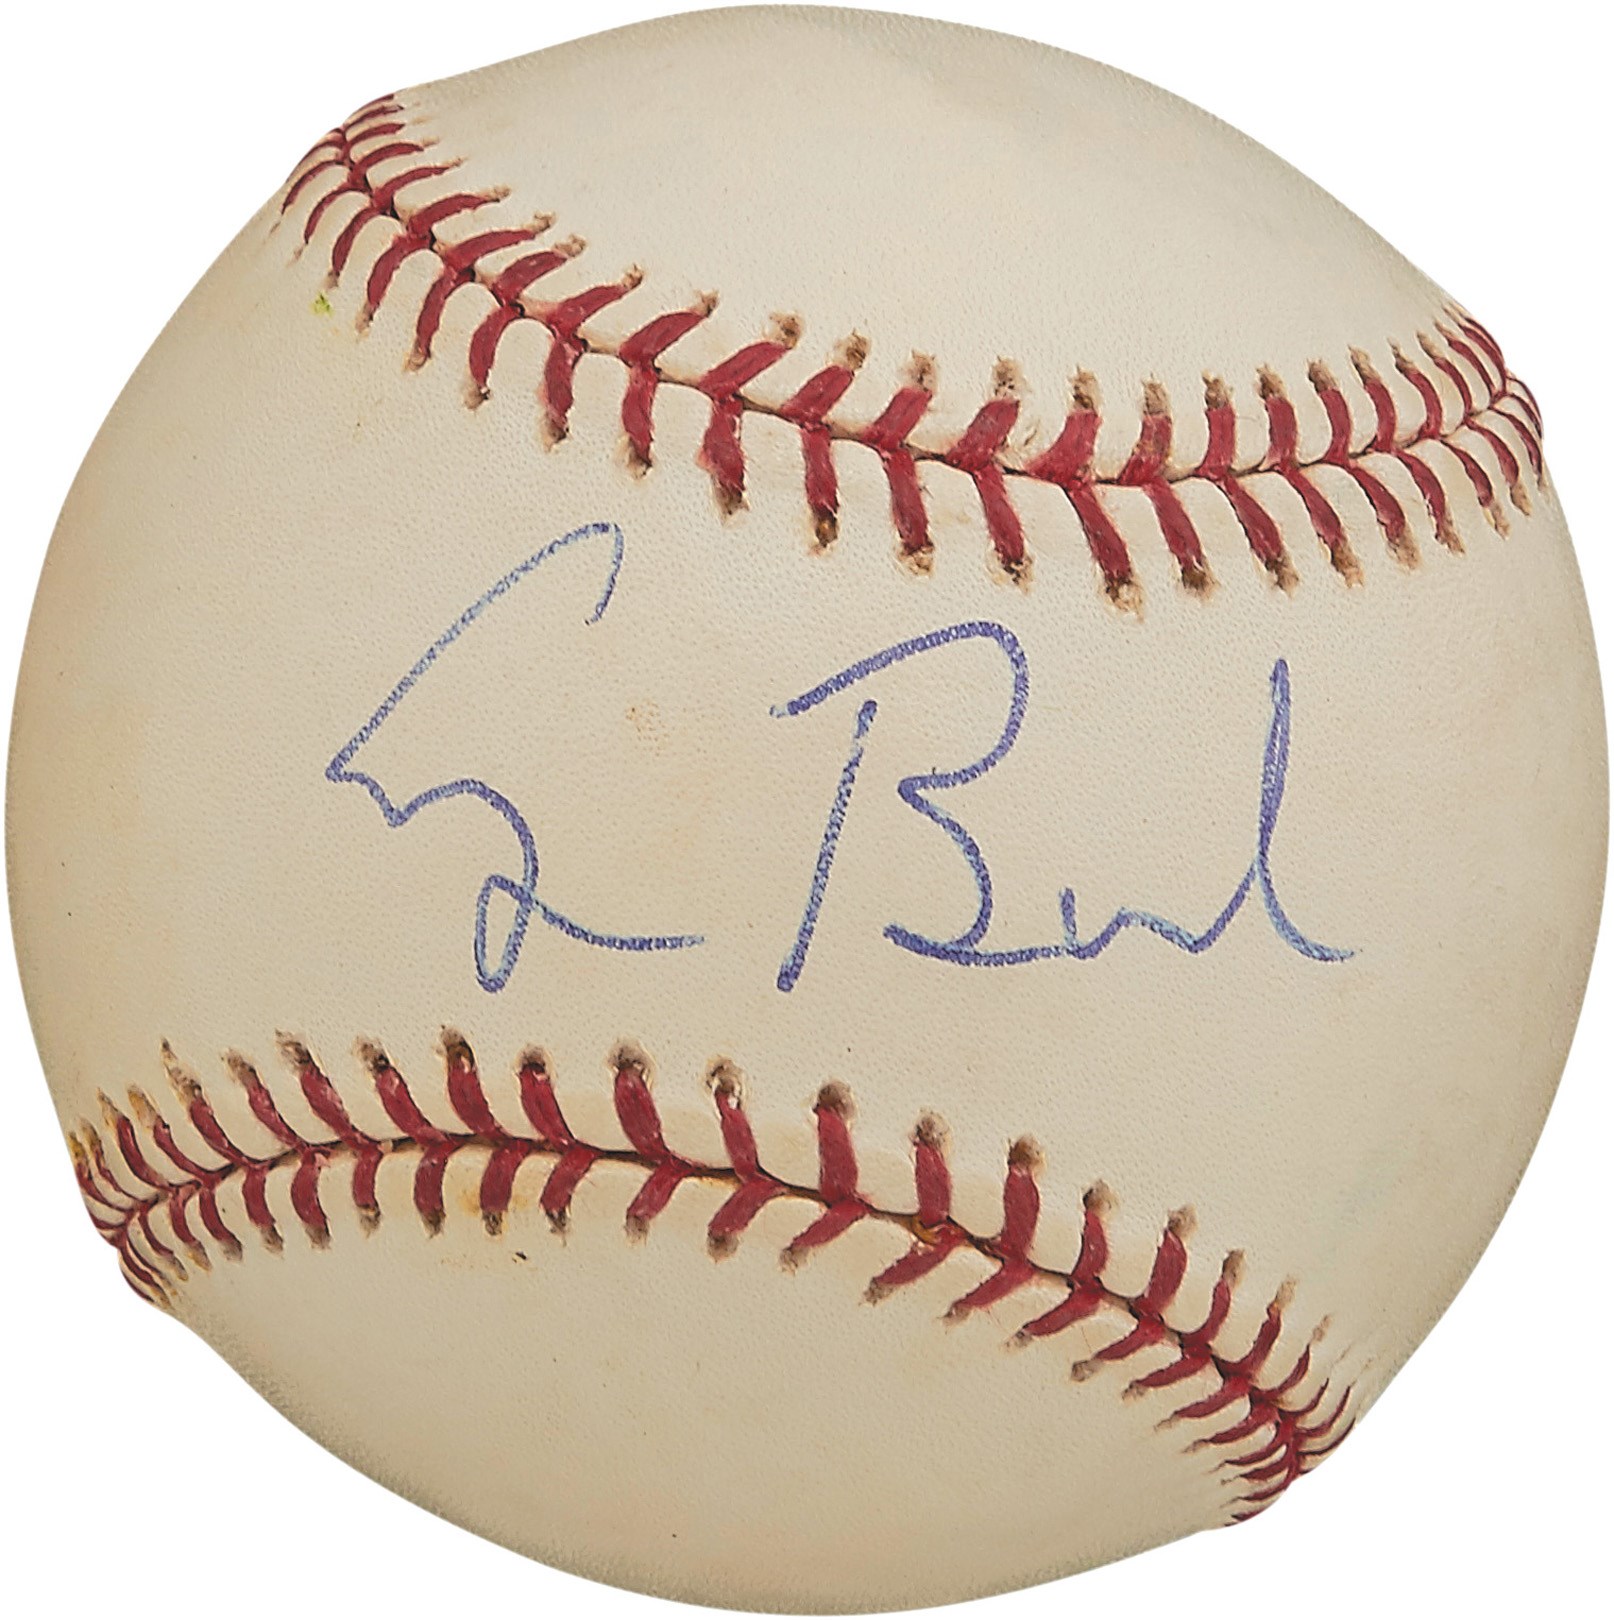 Baseball Autographs - George H.W. Bush Signed Baseball to Bobby Doerr (Photo Proof)